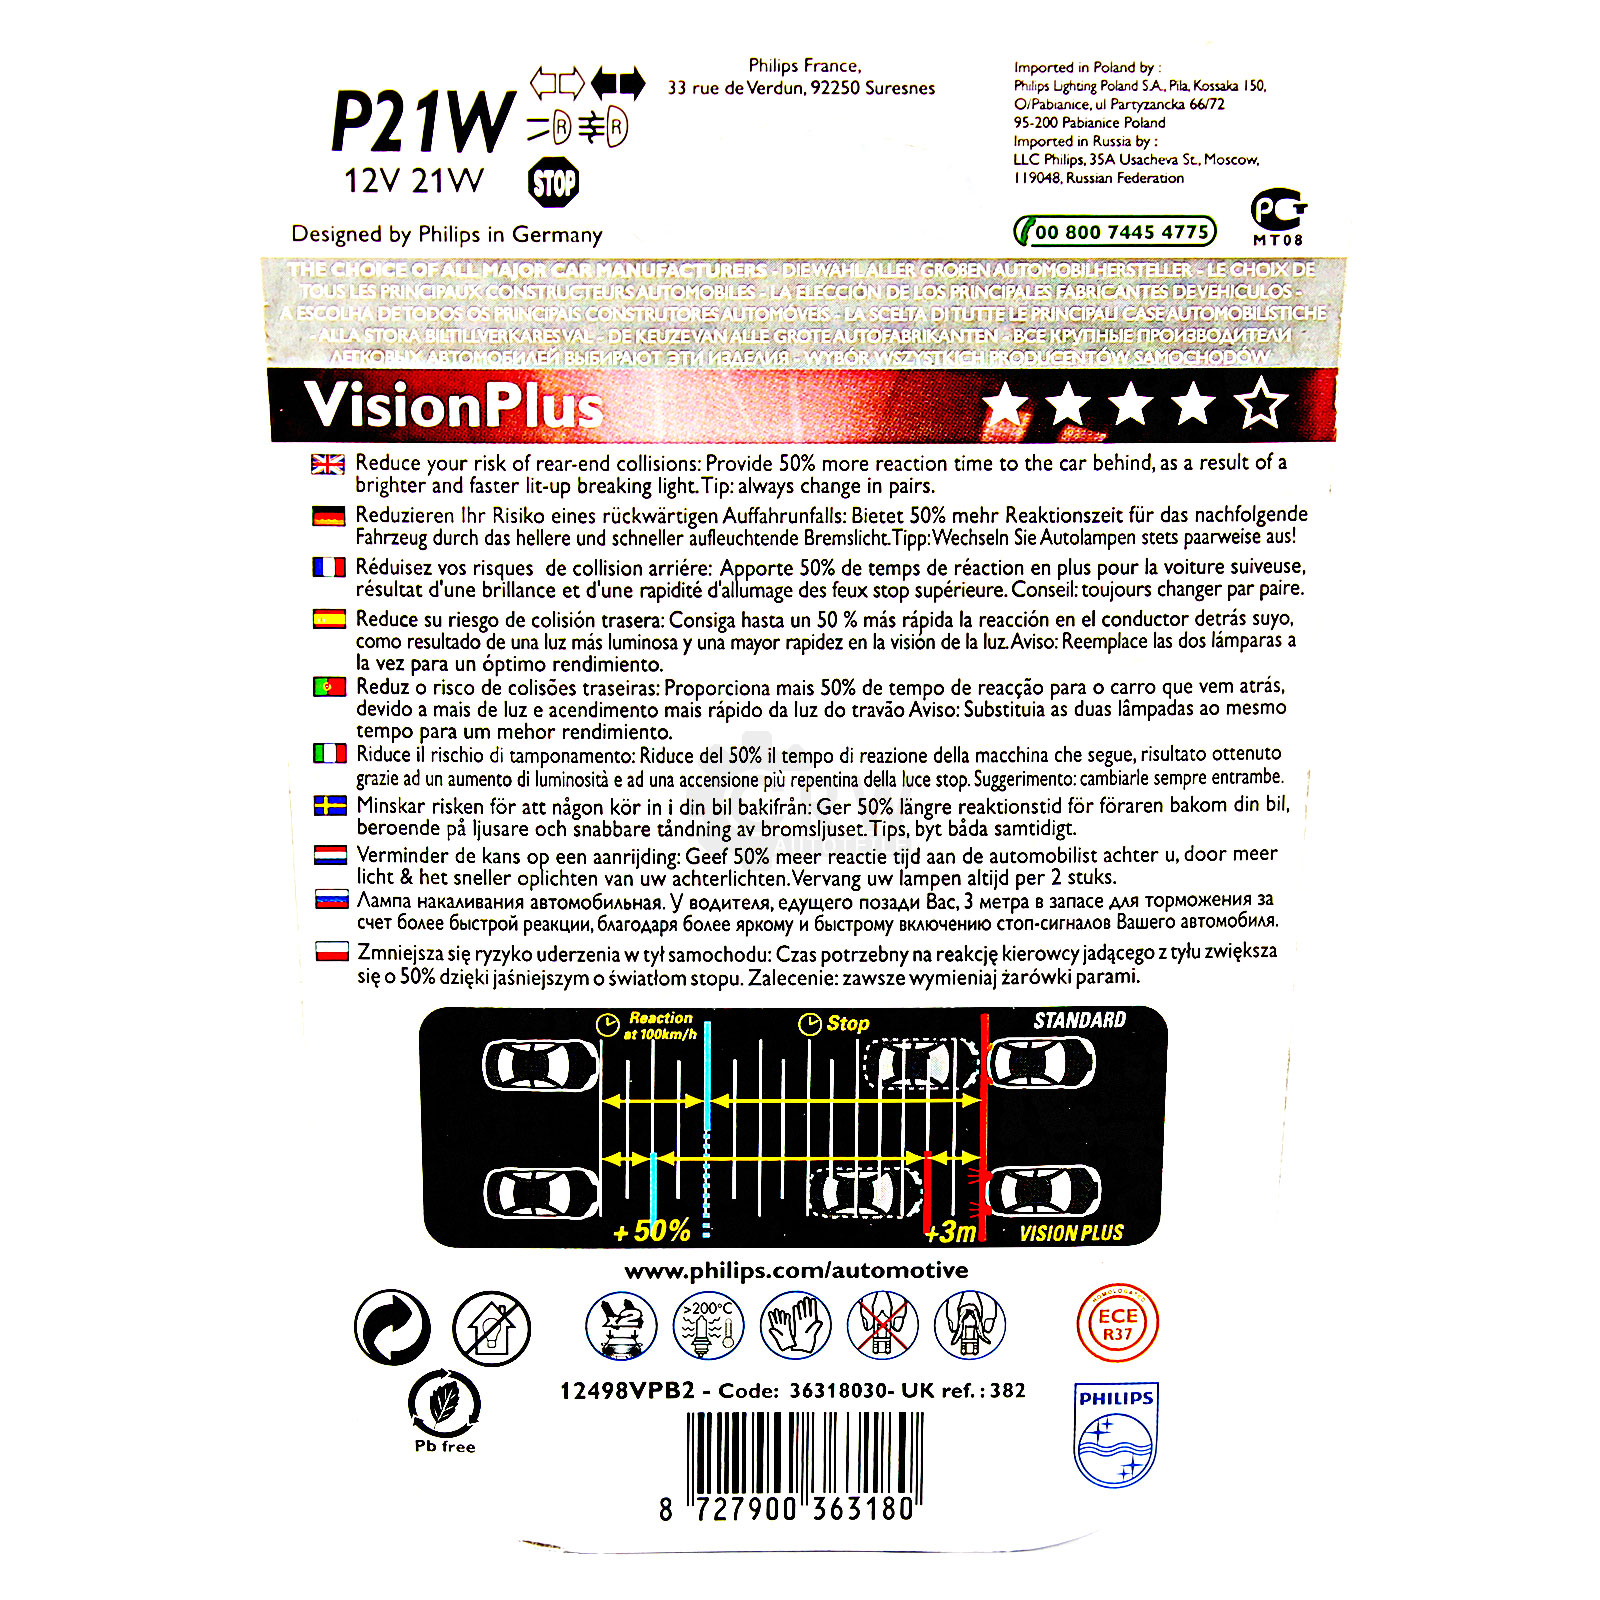 Philips VisionPlus P21W Signalbeleuchtung und Innenbeleuchtung 